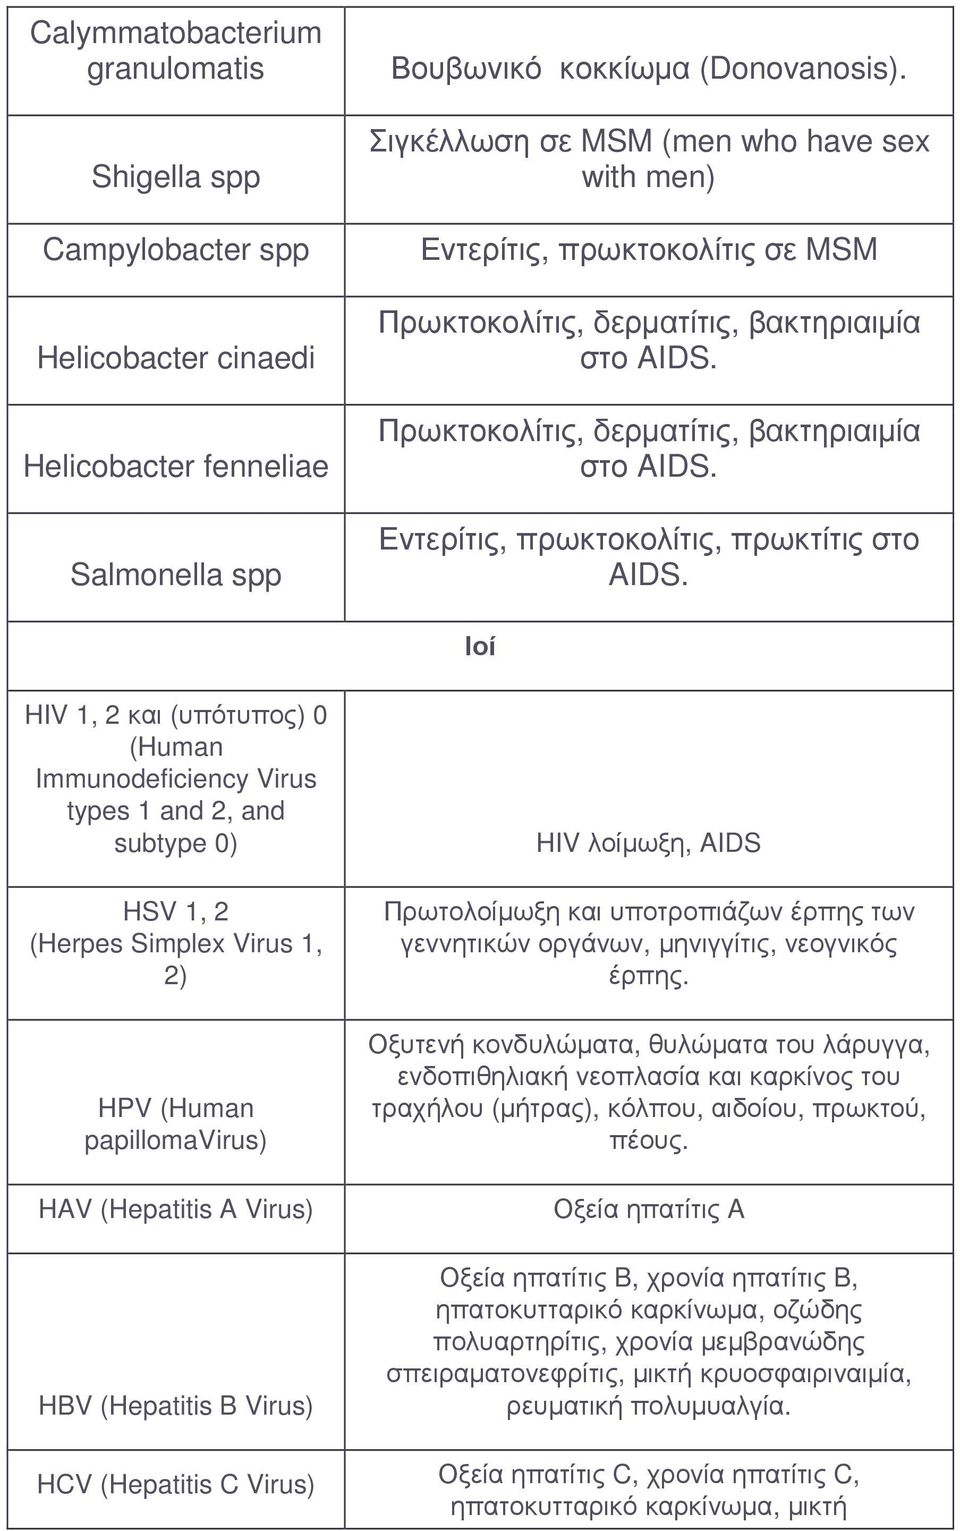 Ιοί HIV 1, 2 και (υπότυπος) 0 (Human Immunodeficiency Virus types 1 and 2, and subtype 0) HSV 1, 2 (Herpes Simplex Virus 1, 2) HPV (Human papillomavirus) HAV (Hepatitis A Virus) HBV (Hepatitis B